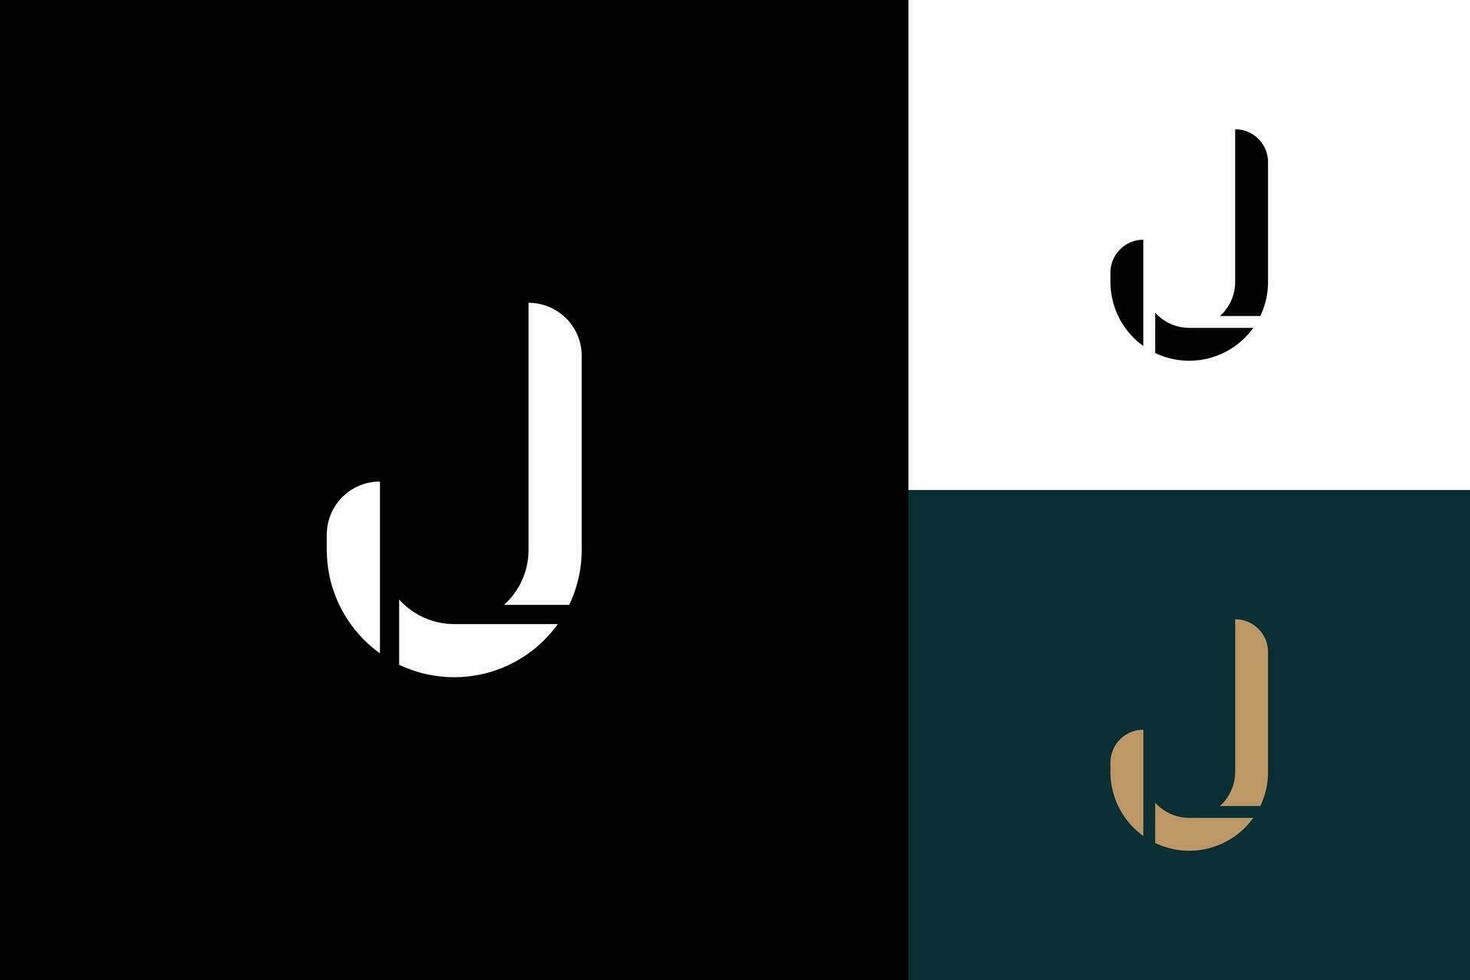 lettera j monogramma vettore logo design